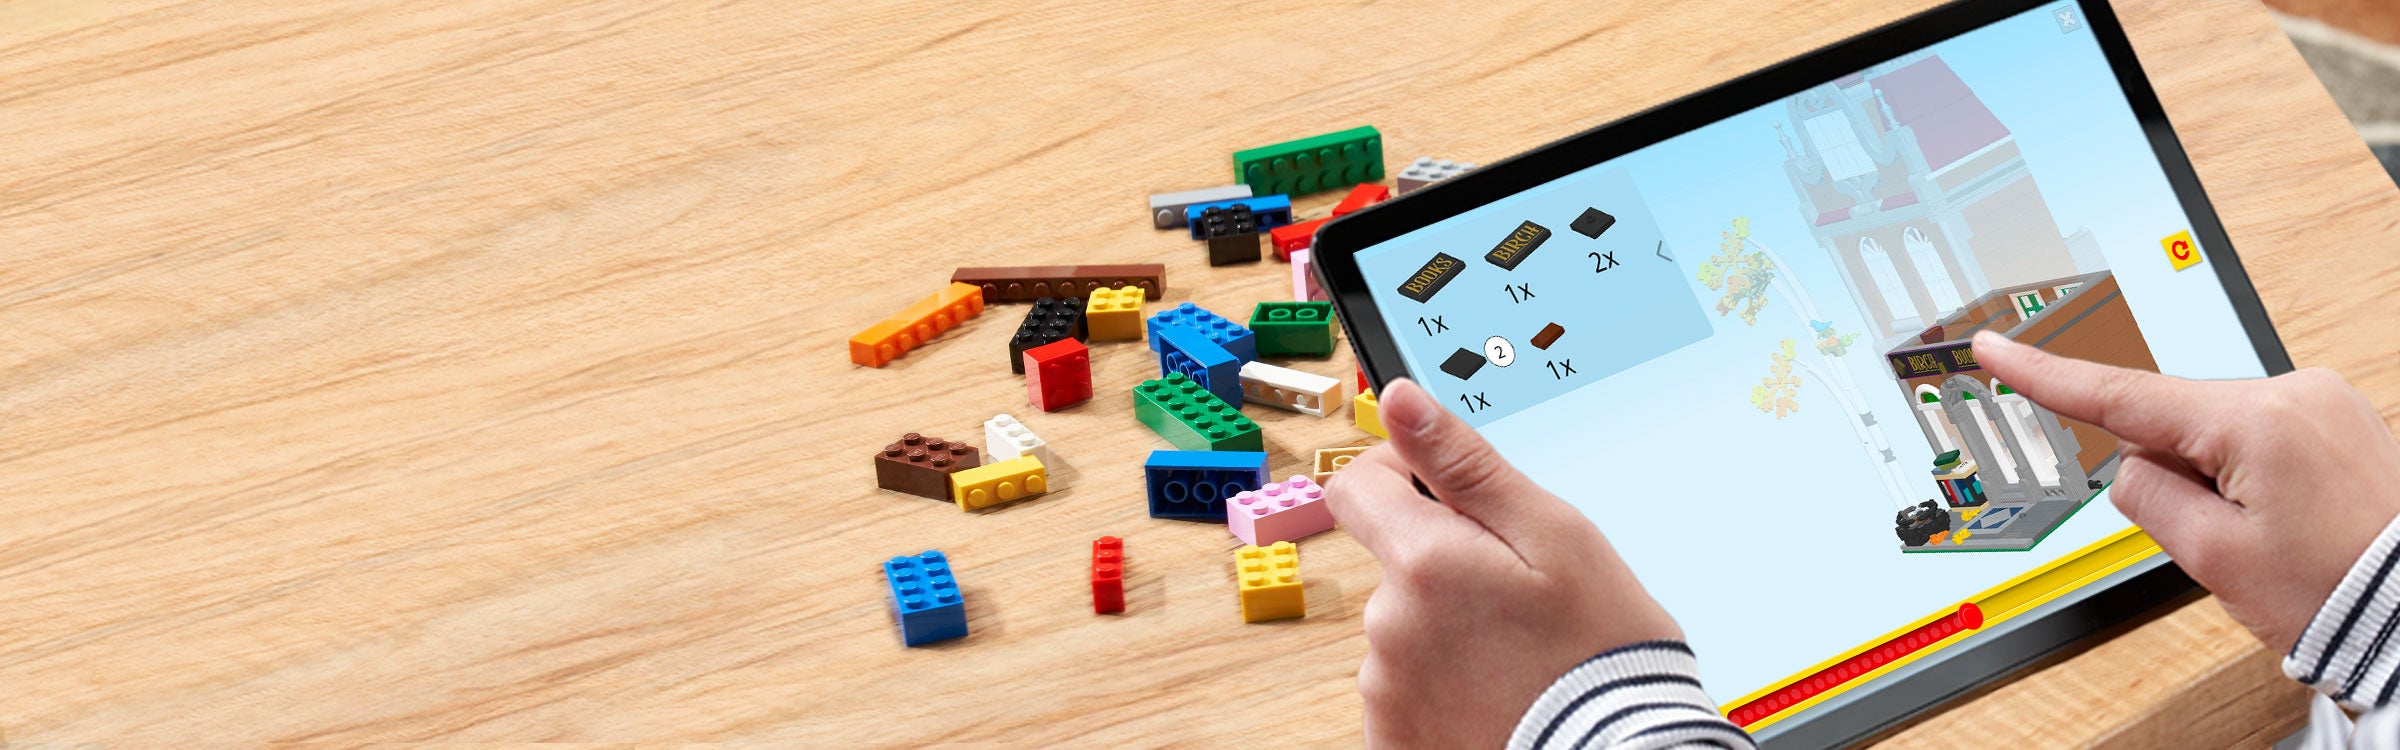 Sellado! 2504 piezas totalmente Nuevo Lego 10270 creator expert Librería